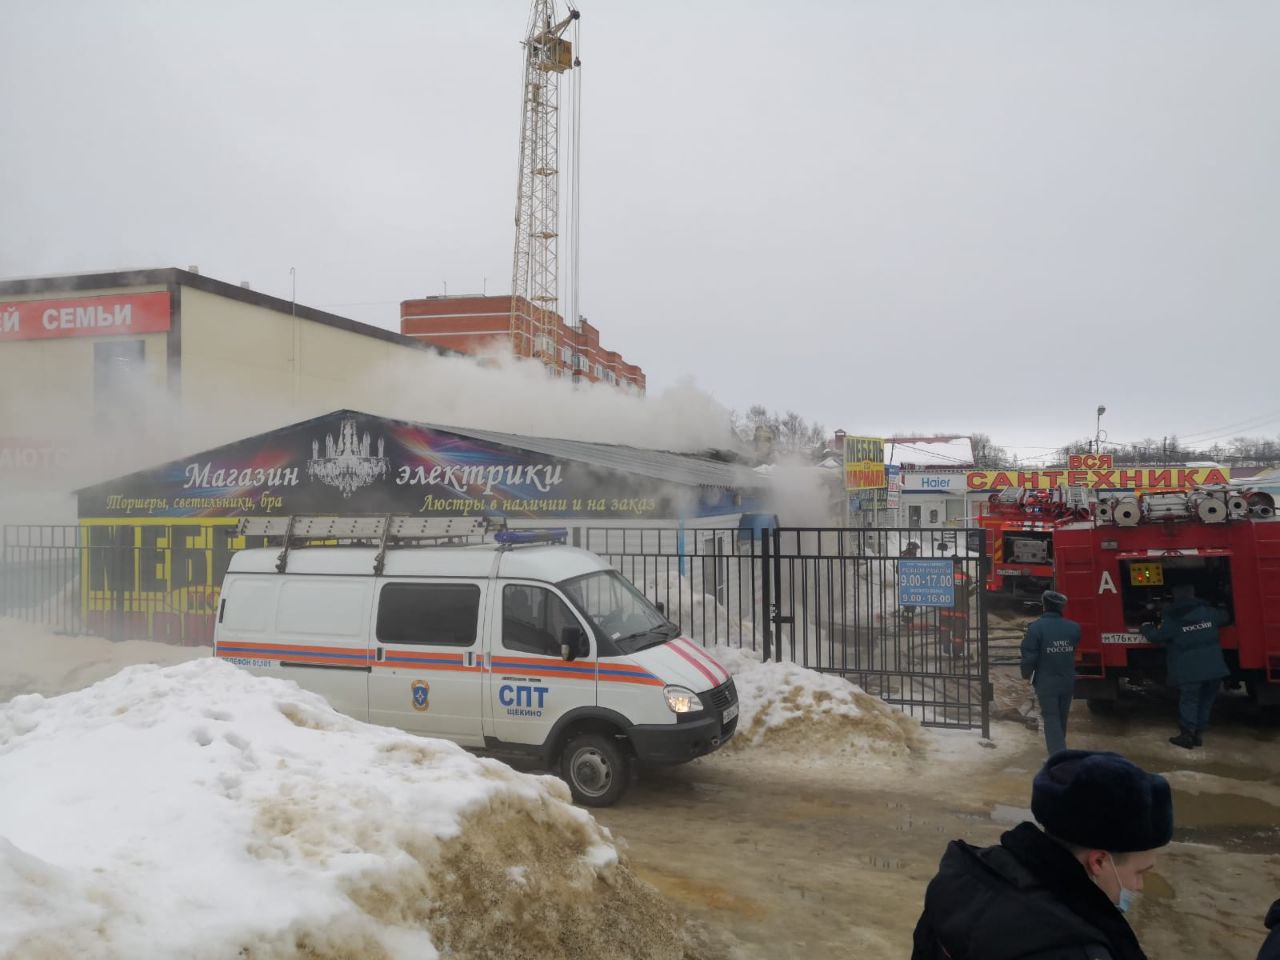 В г. Щекино произошел пожар на рынке стройматериалов: прокуратура выявила целый ряд нарушений